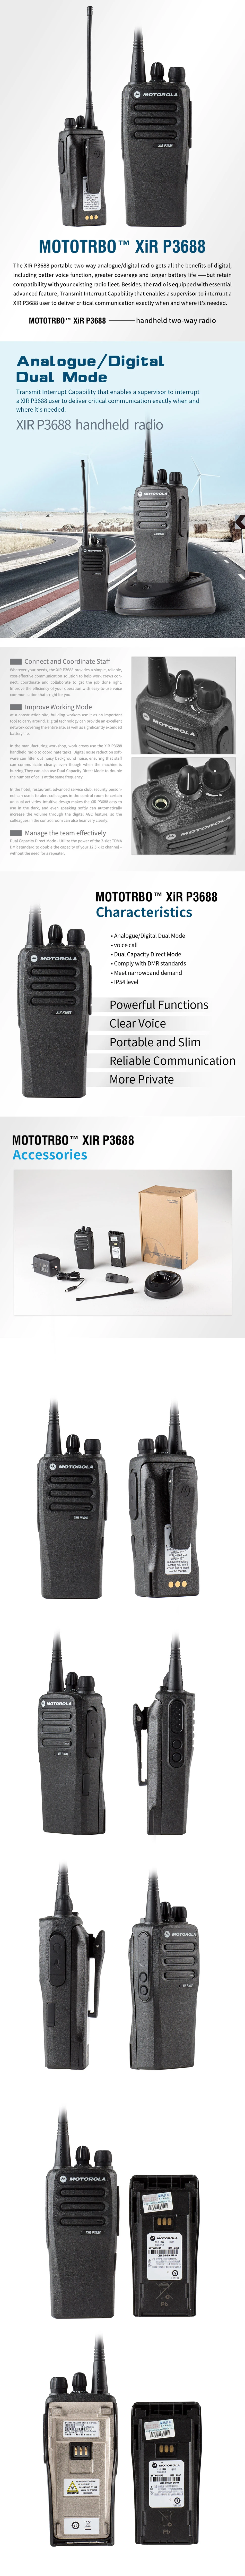 Portable digital dmr radio XiR P3688 handheld two-way VHF waterproof,digital radio